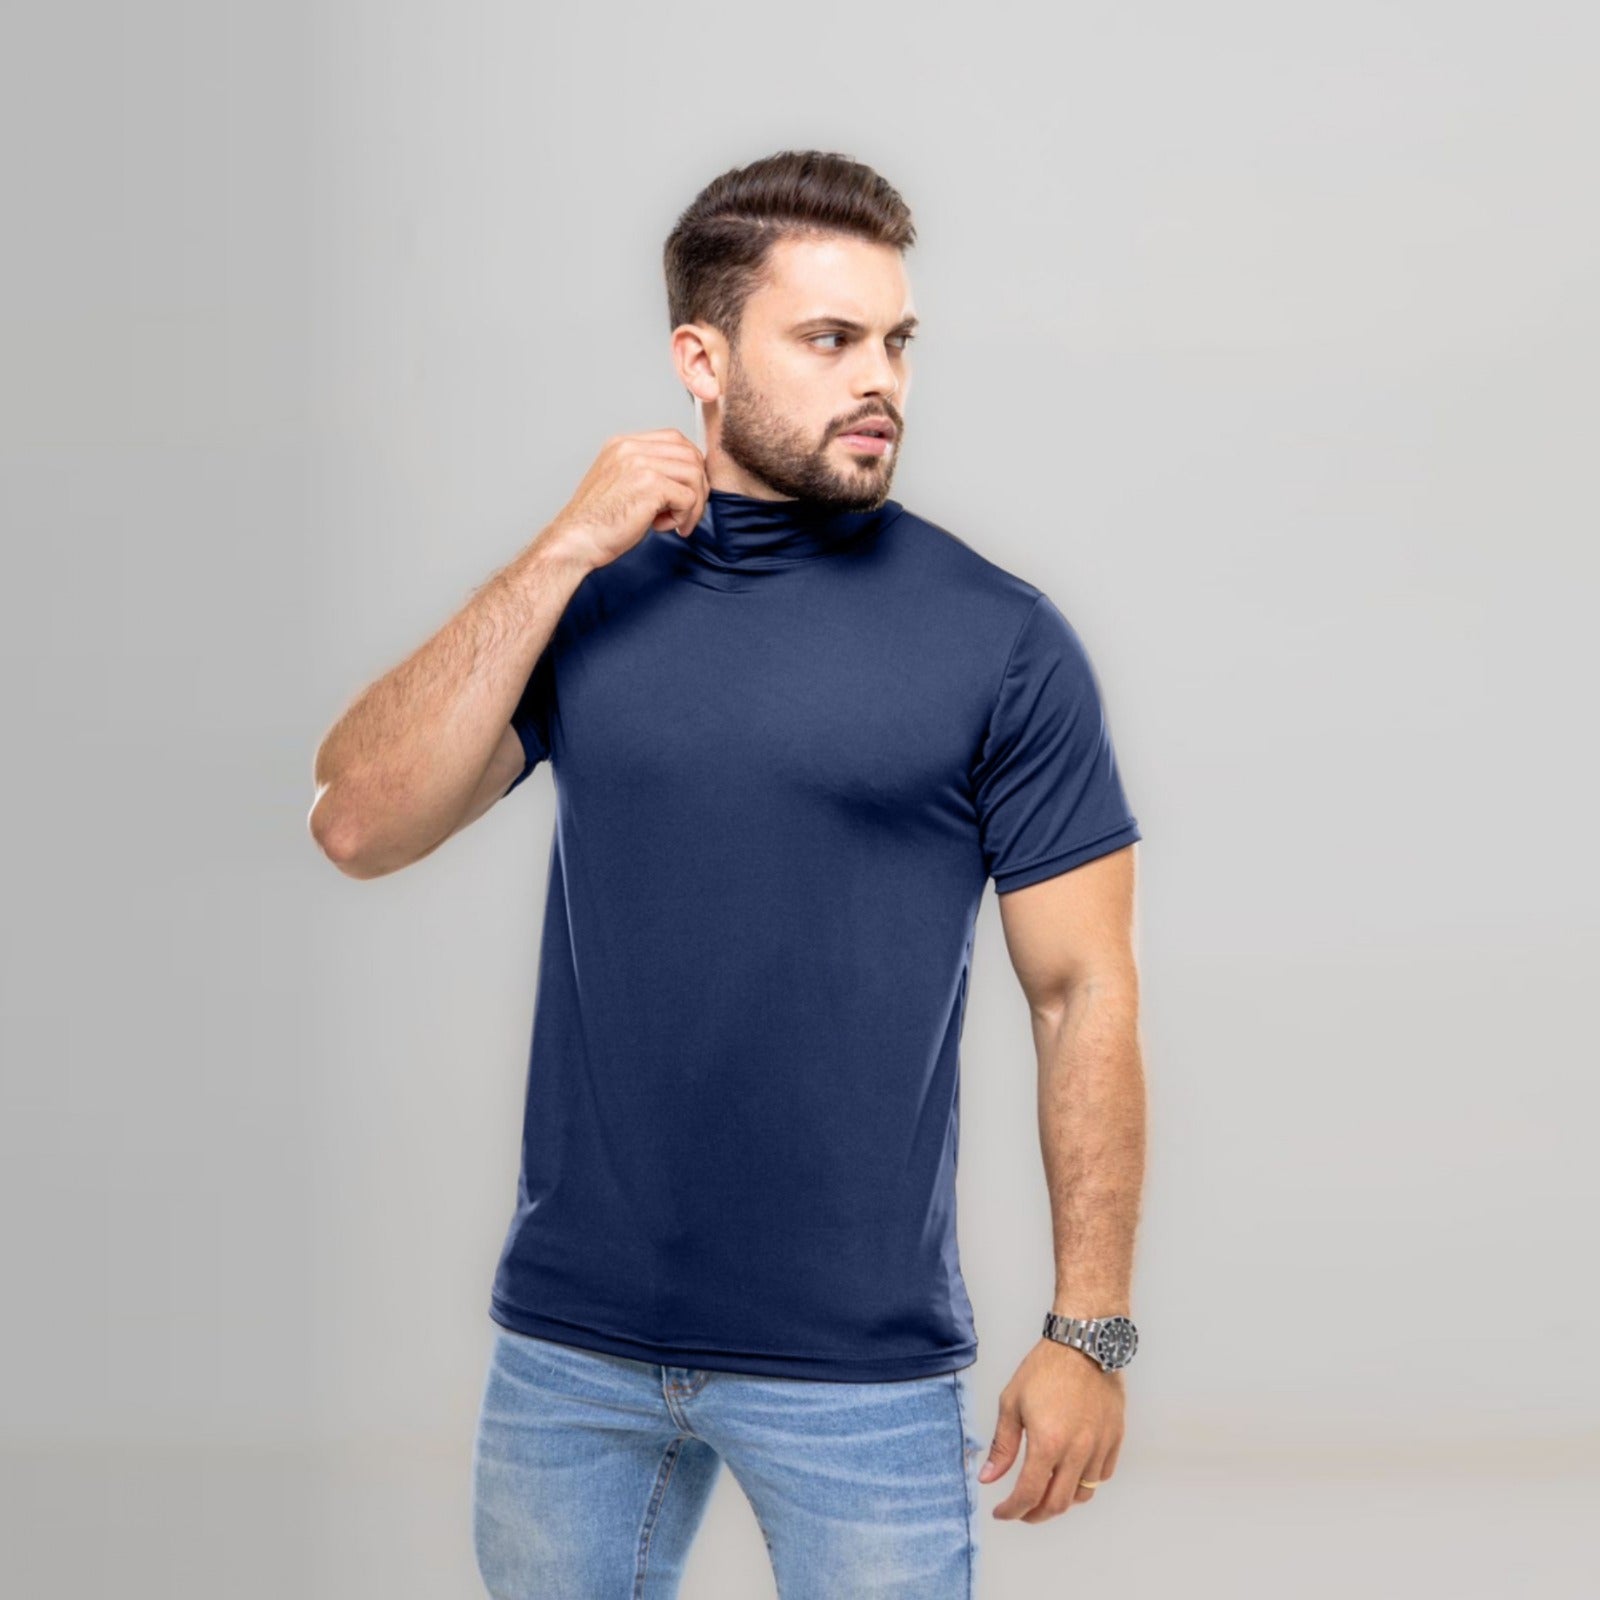 Camiseta Curta Gola Alta Proteção Solar 50+ azul marinho